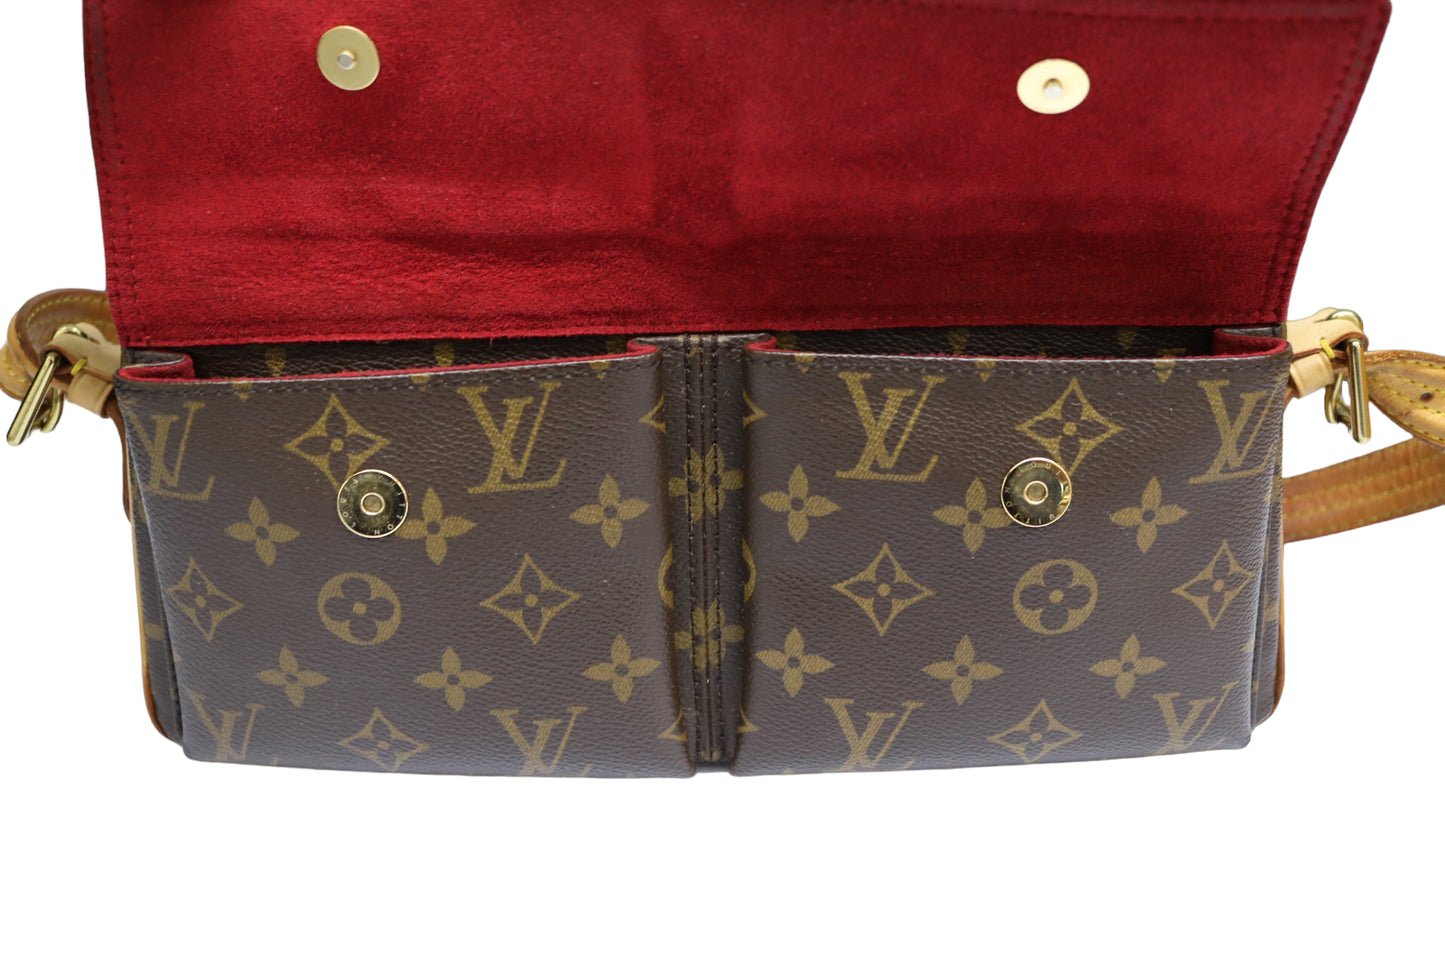 Authentic LOUIS VUITTON Viva-Cite MM Monogram Shoulder Bag